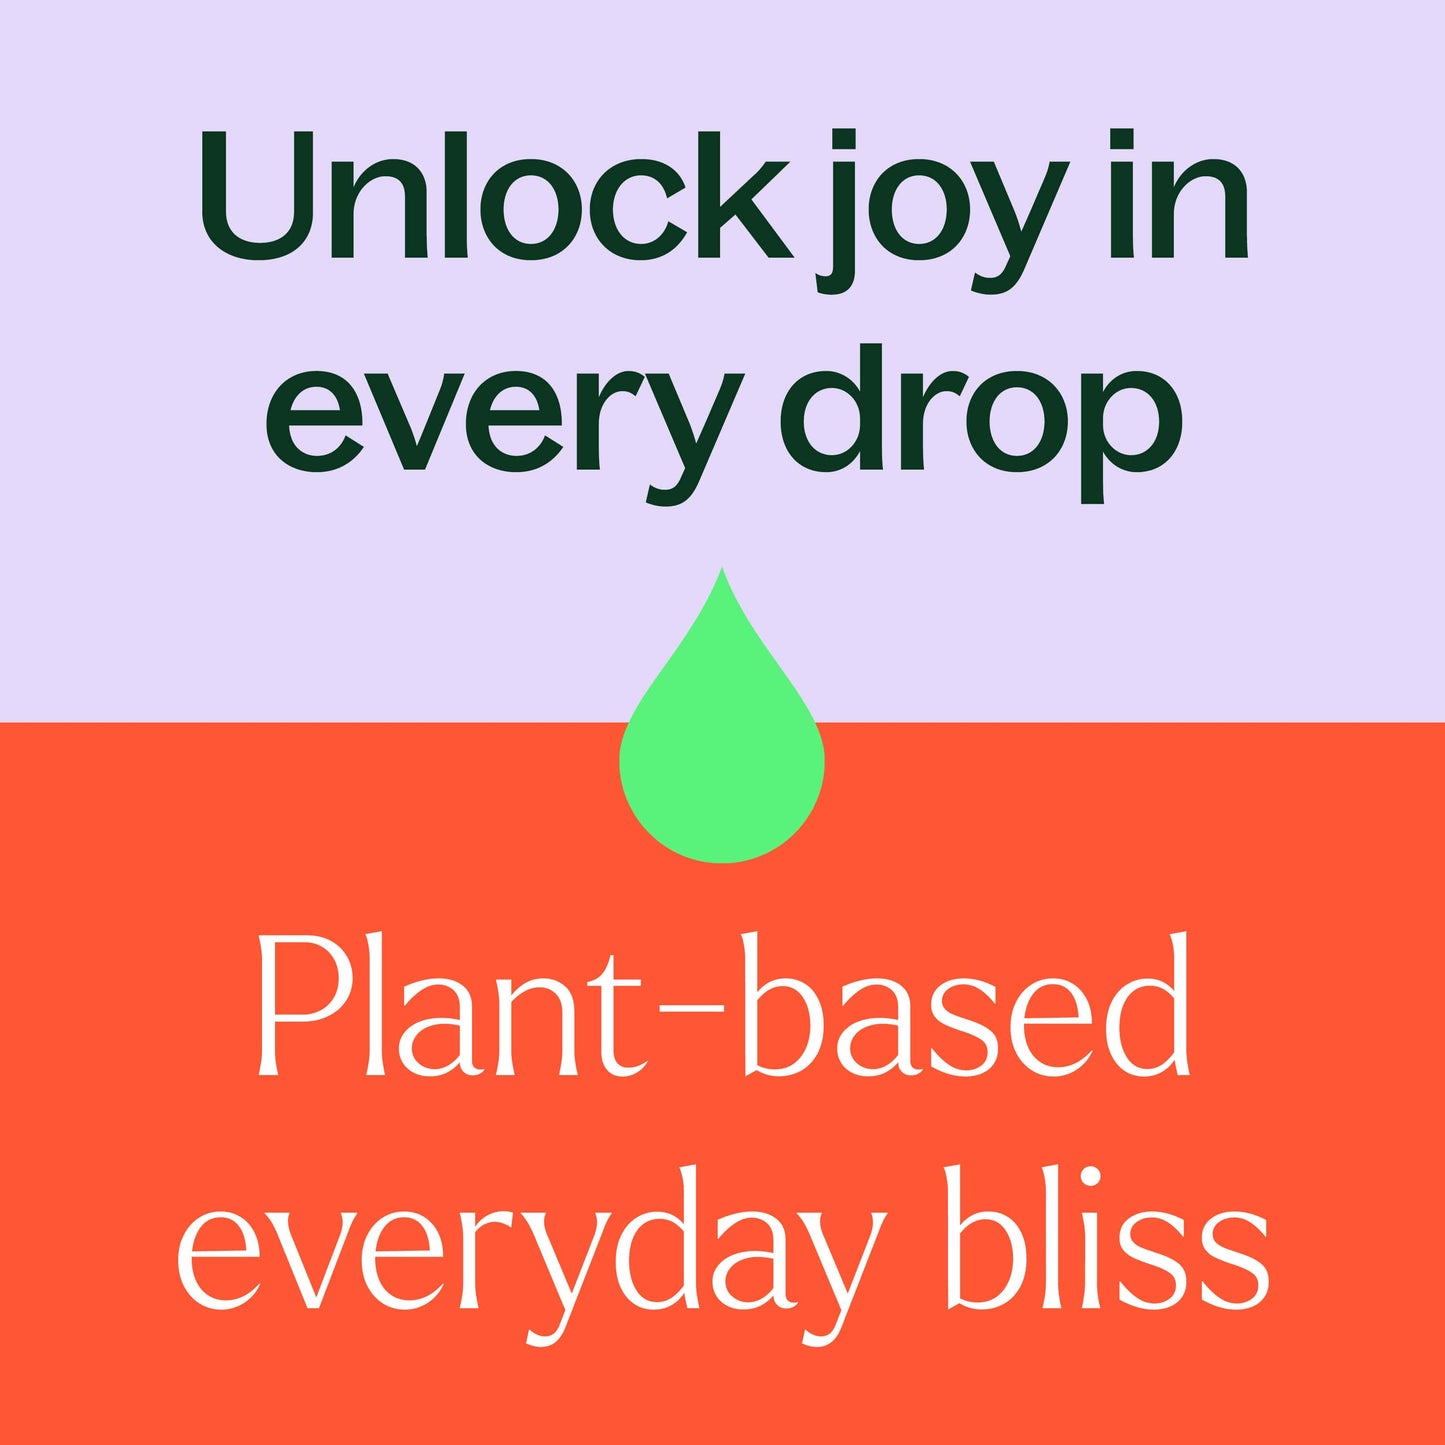 unlock joy in every drop, plant based bliss